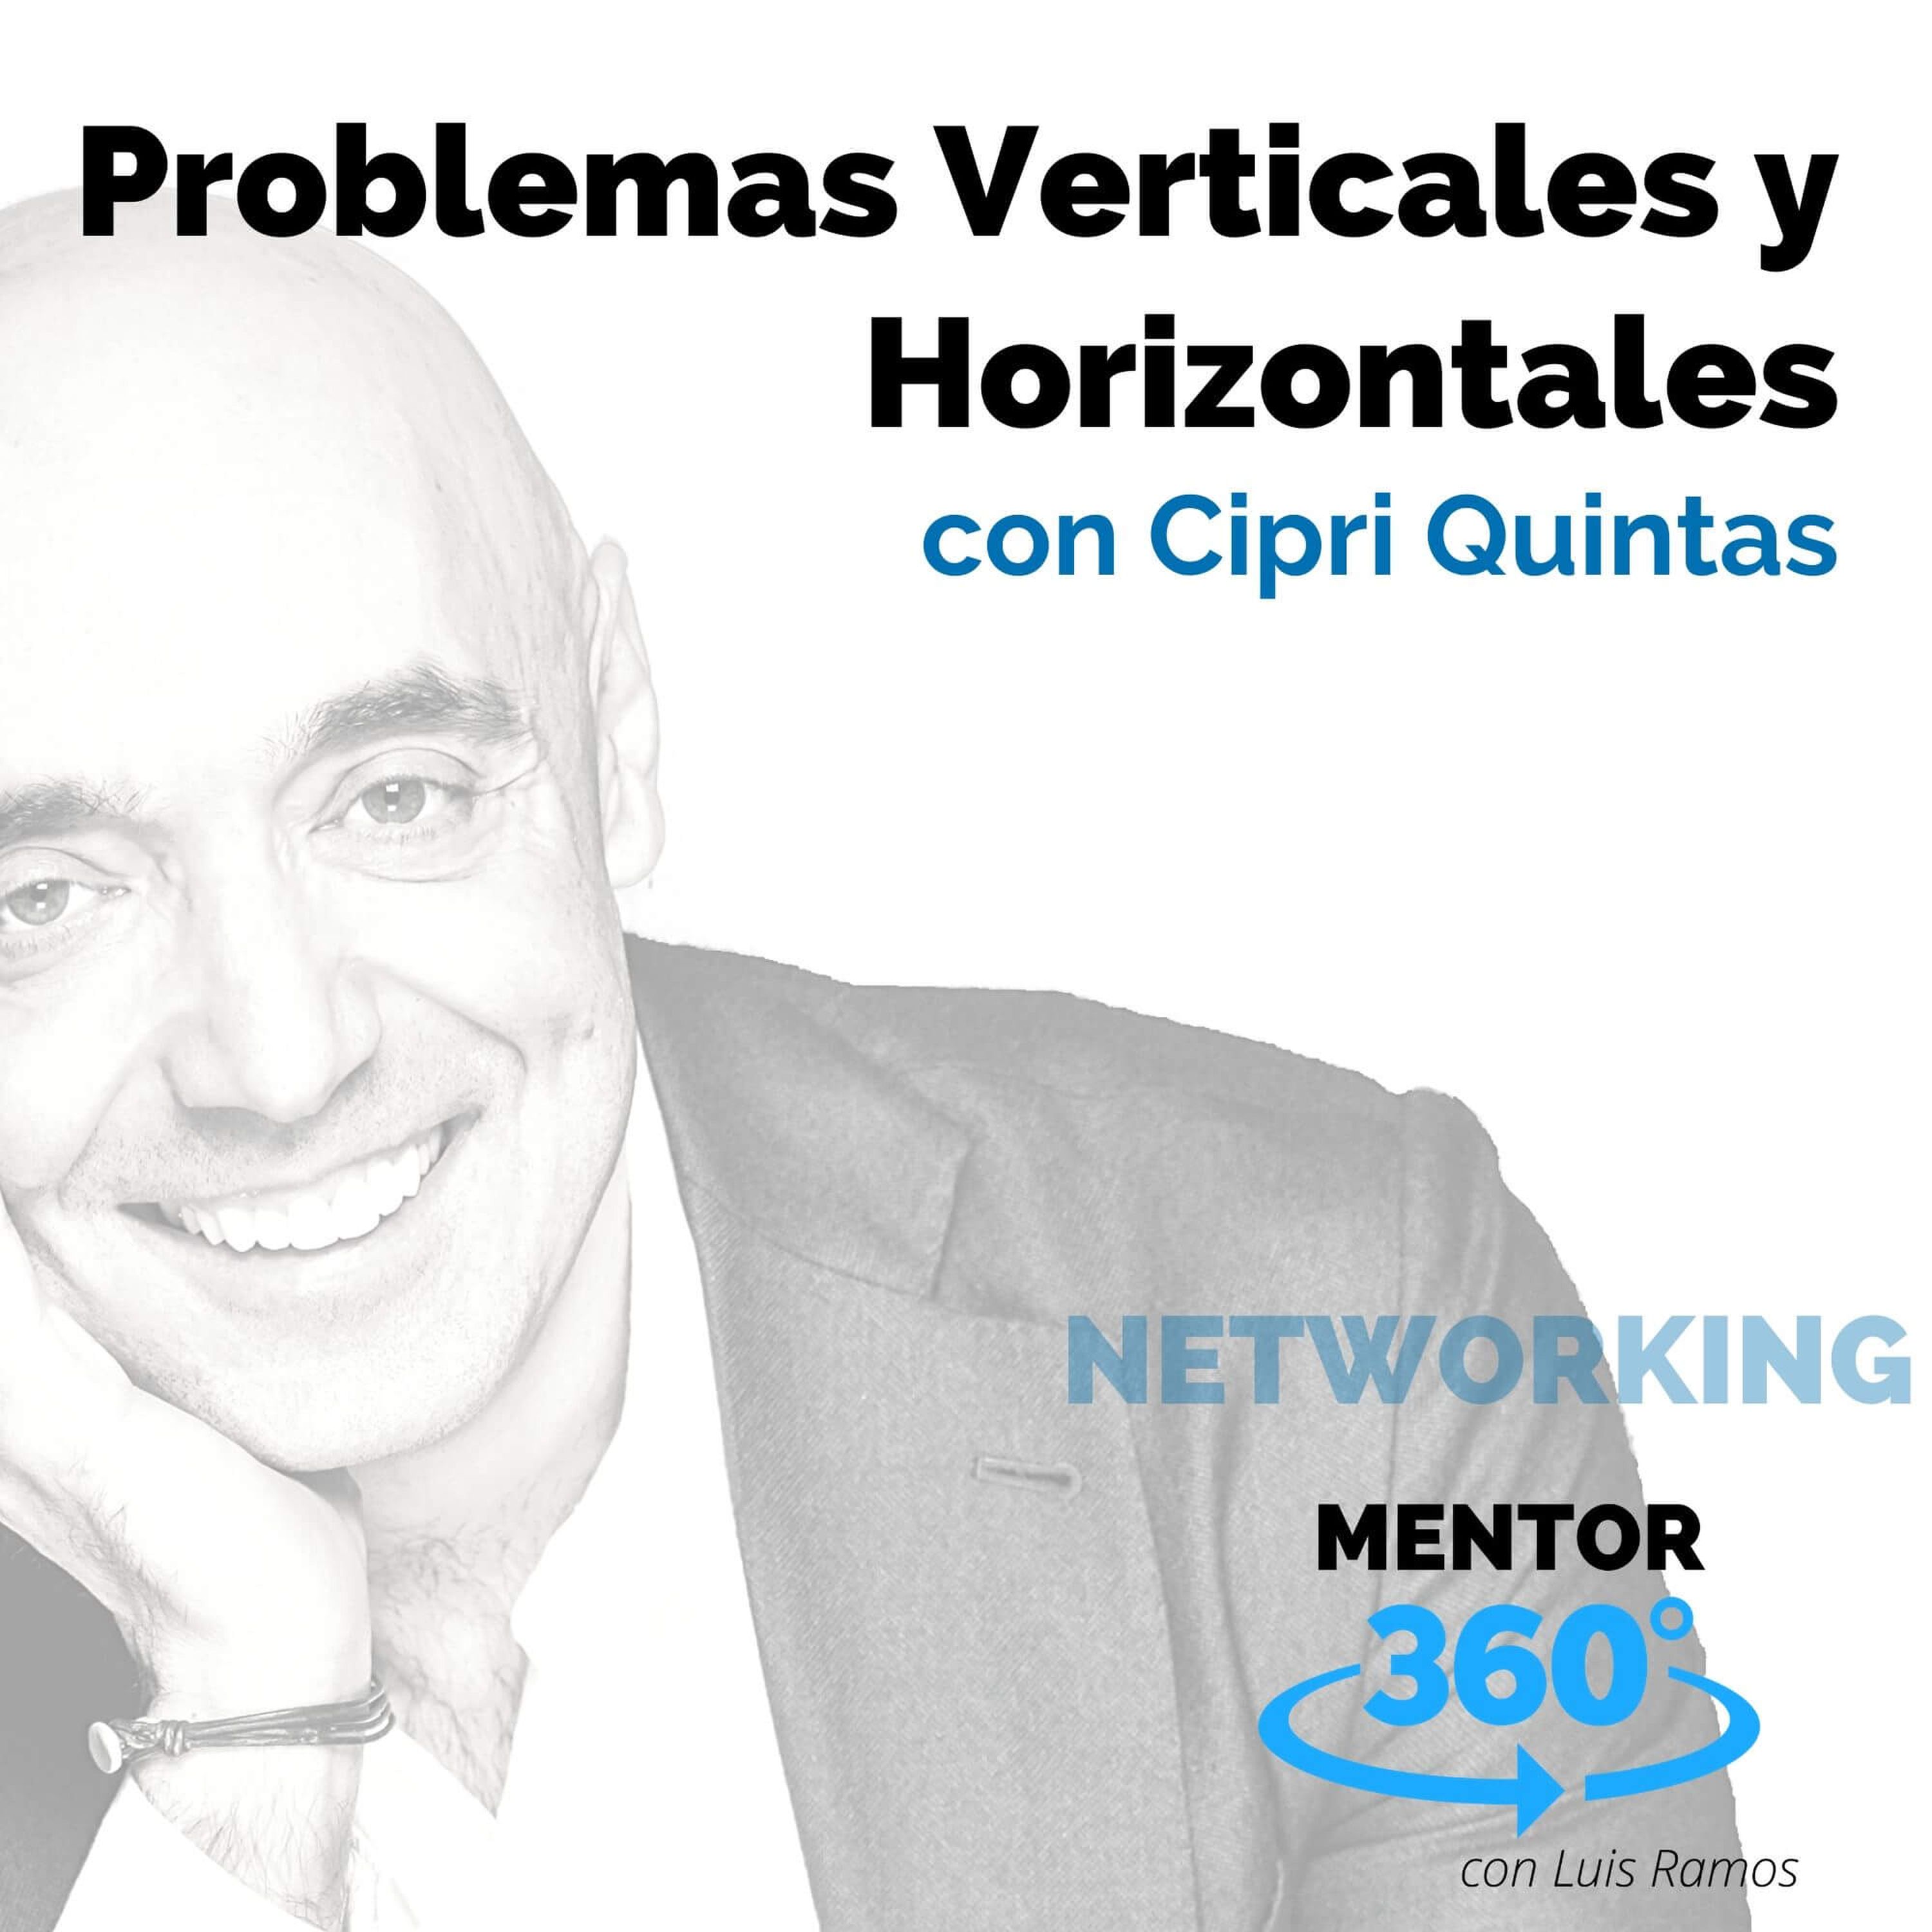 Problemas Verticales y Horizontales, con Cipri Quintas - NETWORKING